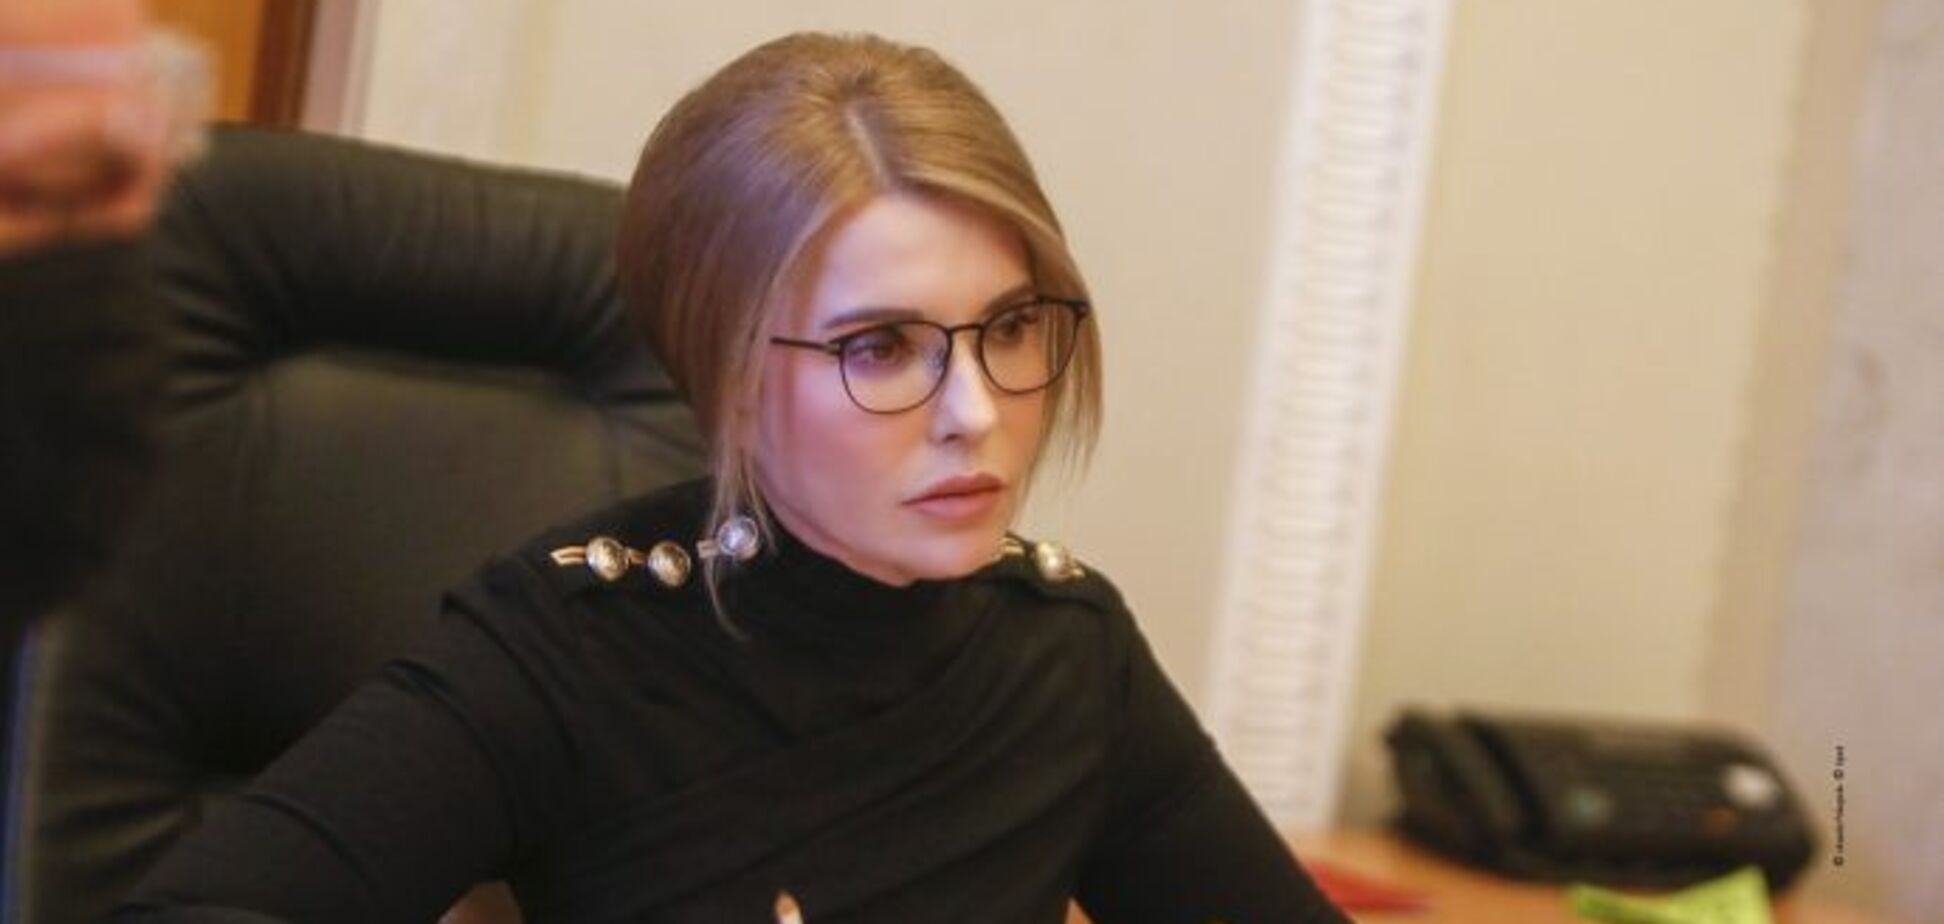 Тимошенко была бы лучшим премьером в кризисной ситуации, но Зеленский не рискнет допускать ее к власти – Небоженко